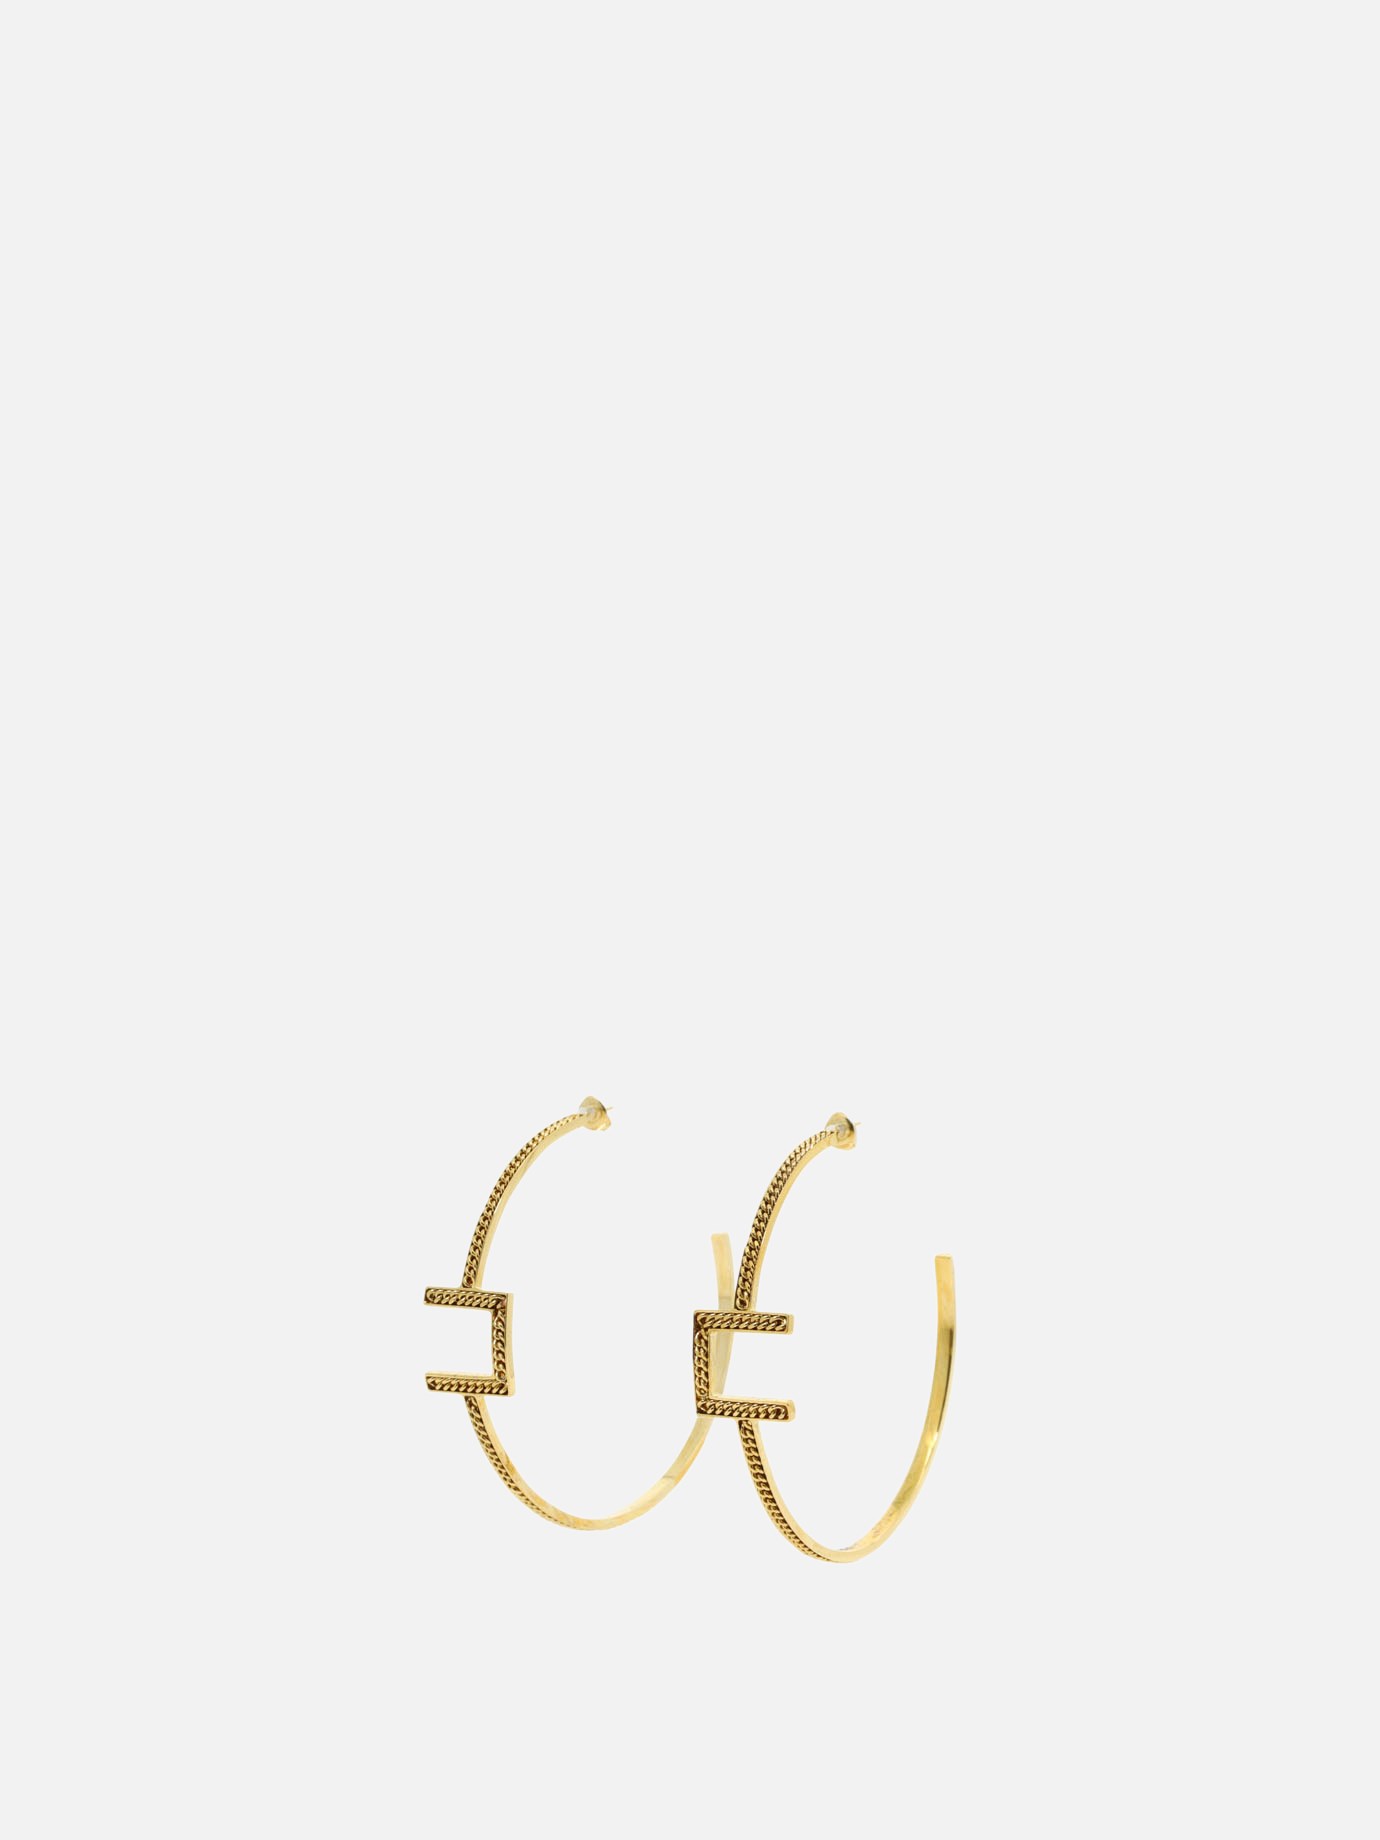 Loop earrings with logo